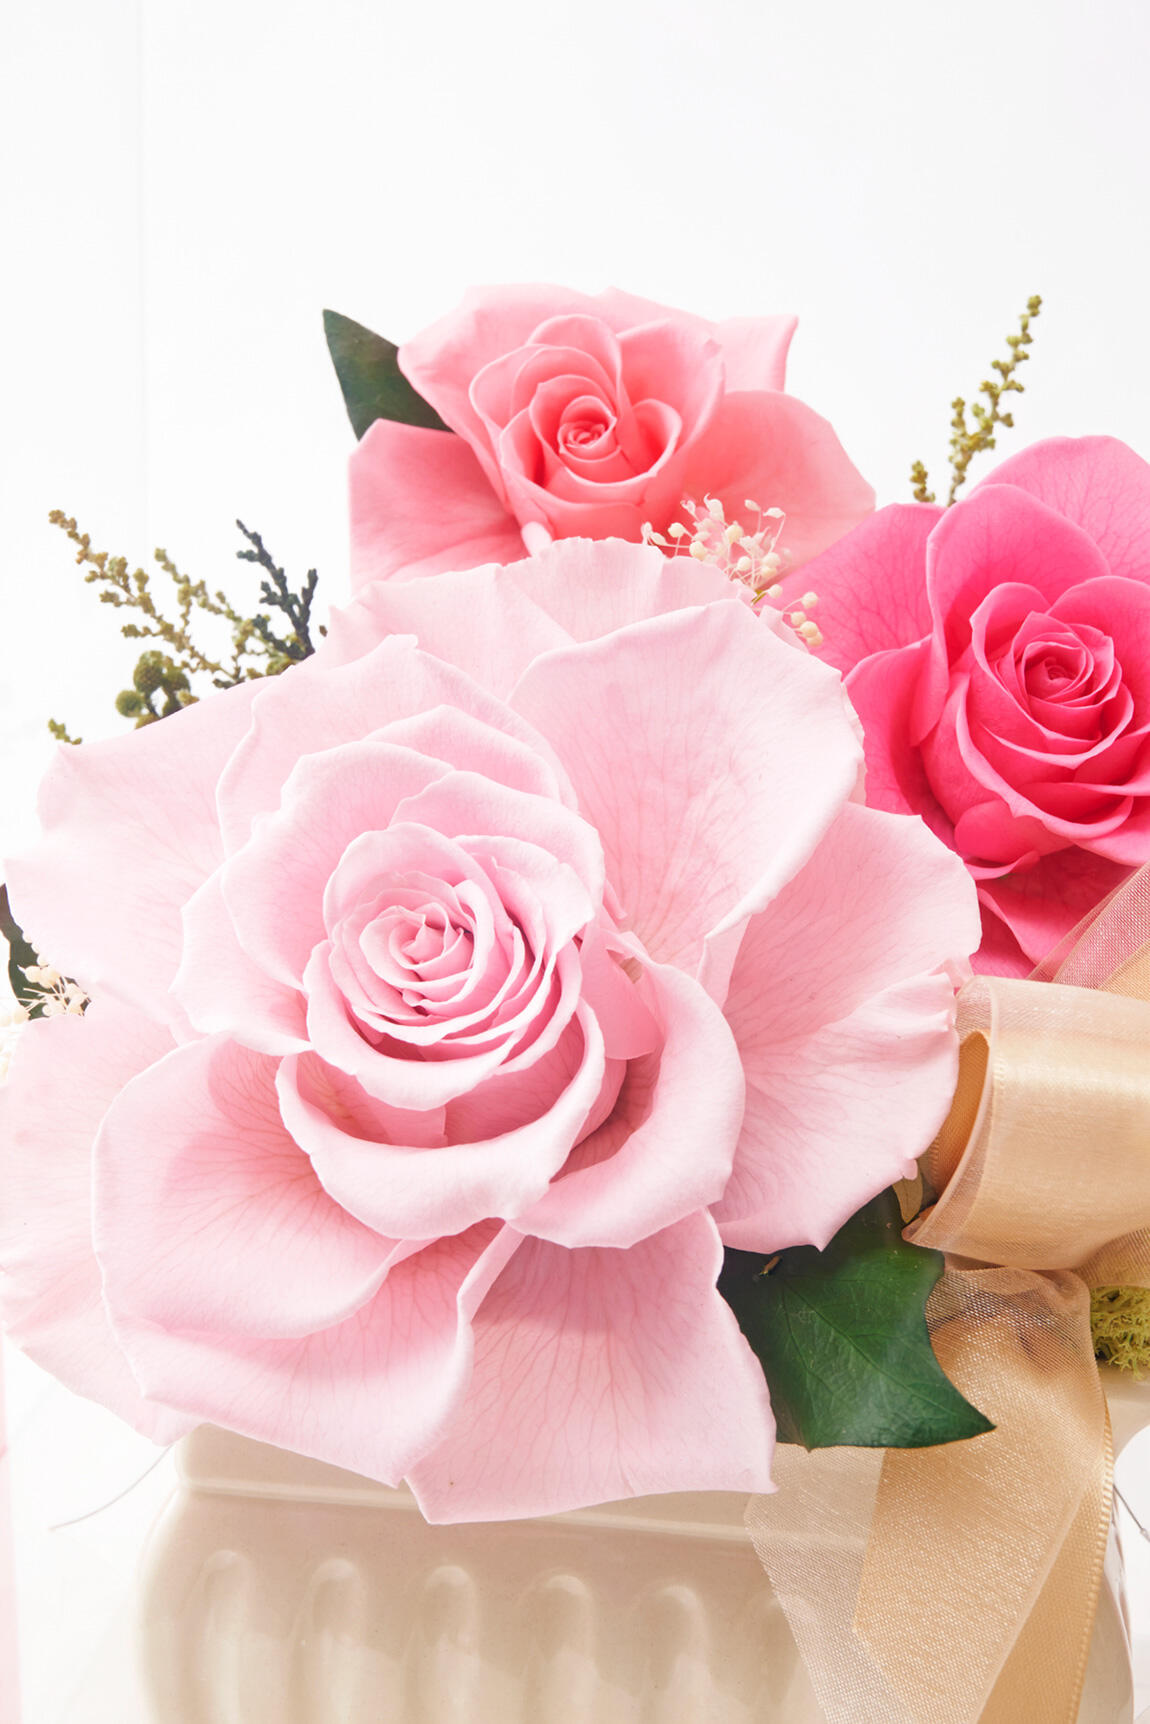 <p>AMOROSA（アモローサ）は南米の国エクアドルで育てられ、剪定から加工後まで色や形、大きさなど厳しい審査基準を通過した、選ばれし最高級のプリザーブドフラワーの薔薇（バラ）の名称です。その存在感や気品の高さから「プリザーブドローズの女王」と呼ばれています。</p>